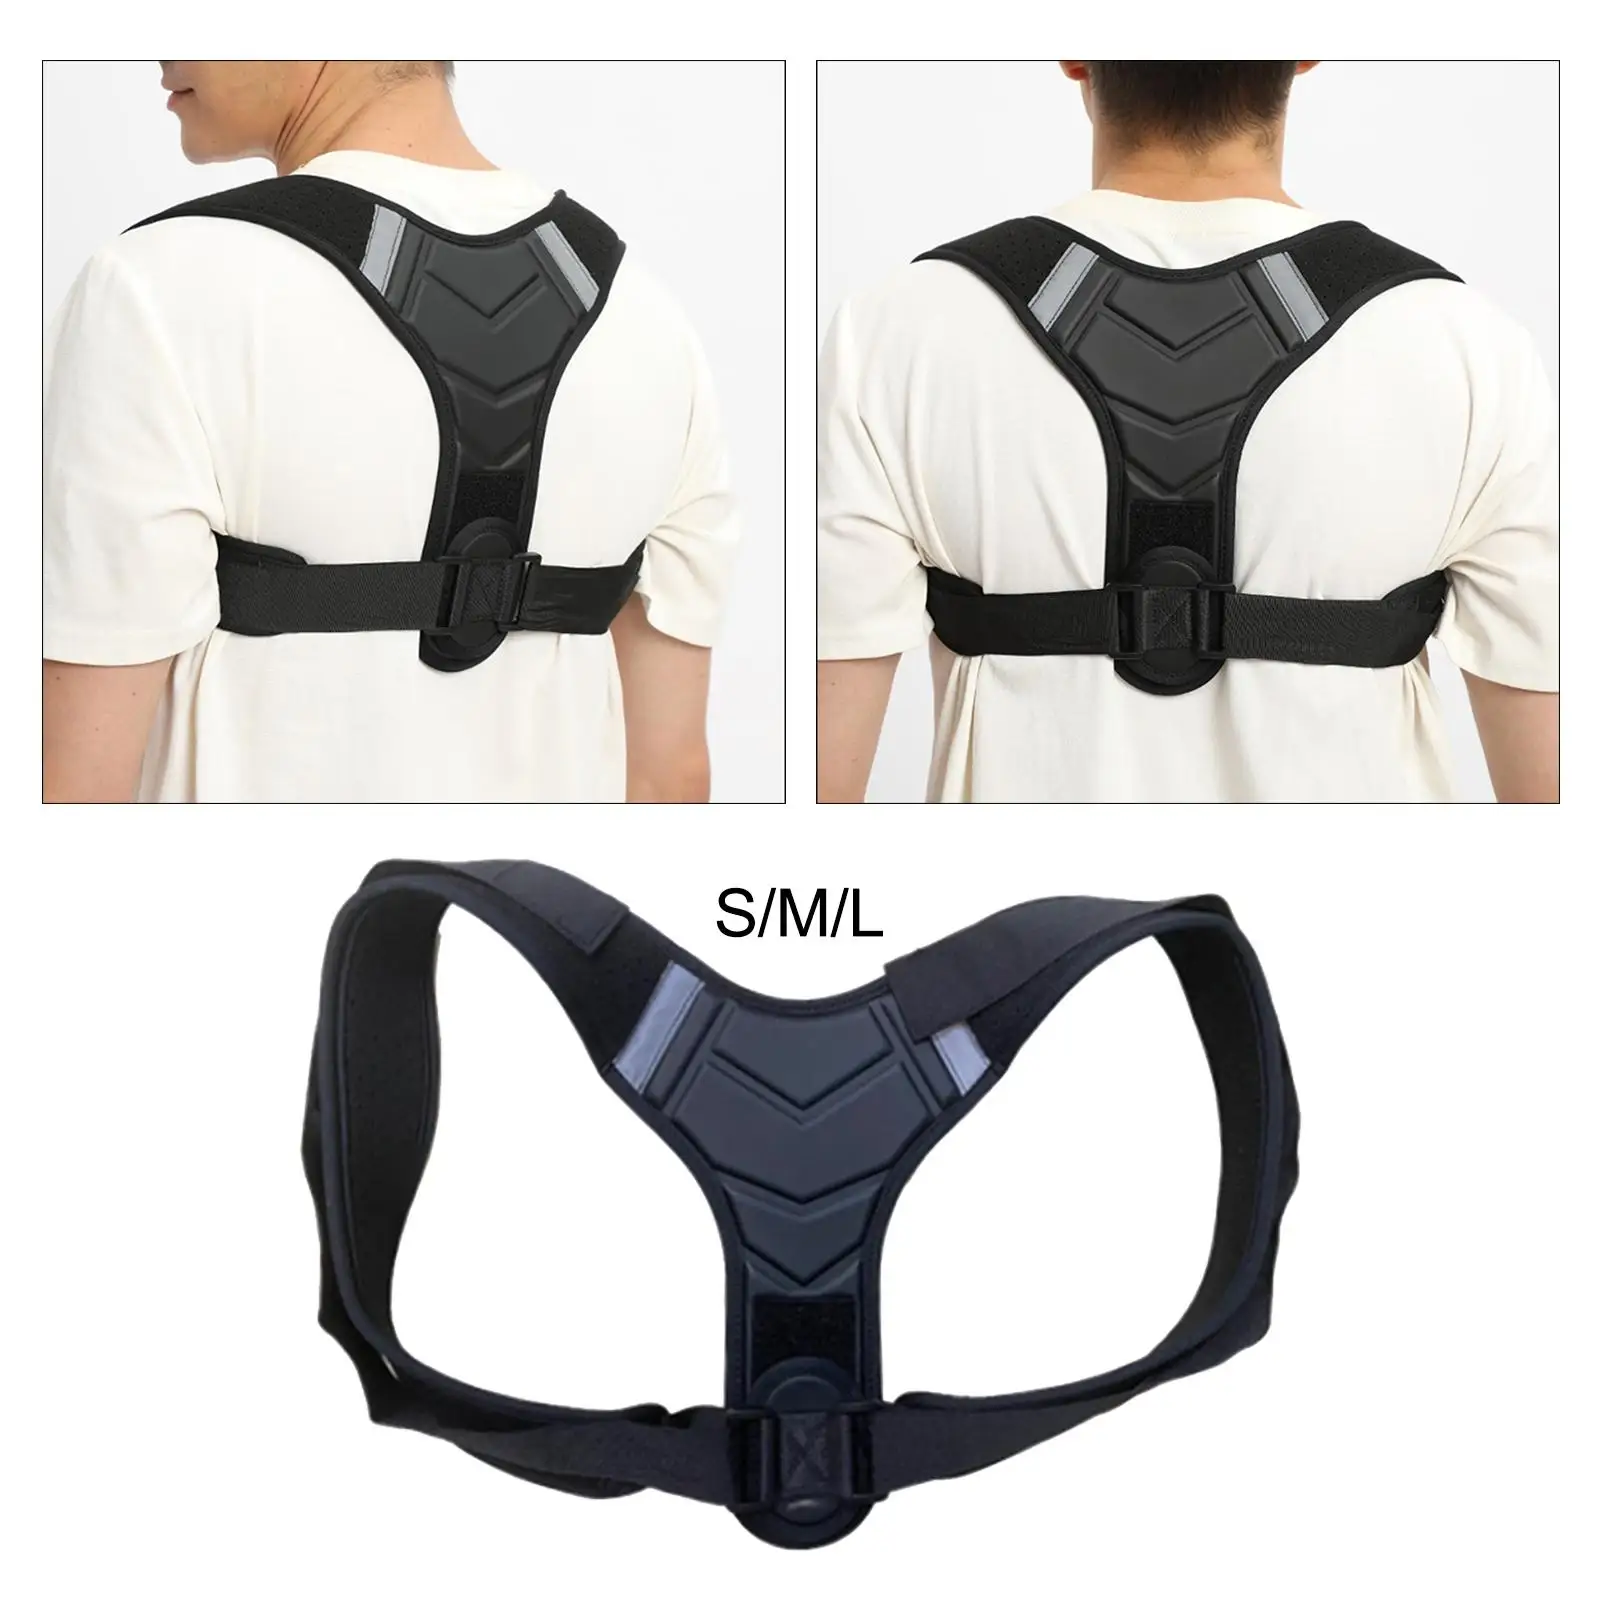 Posture Corrector Breathable Lightweight Upper Back Brace for Shoulder Neck